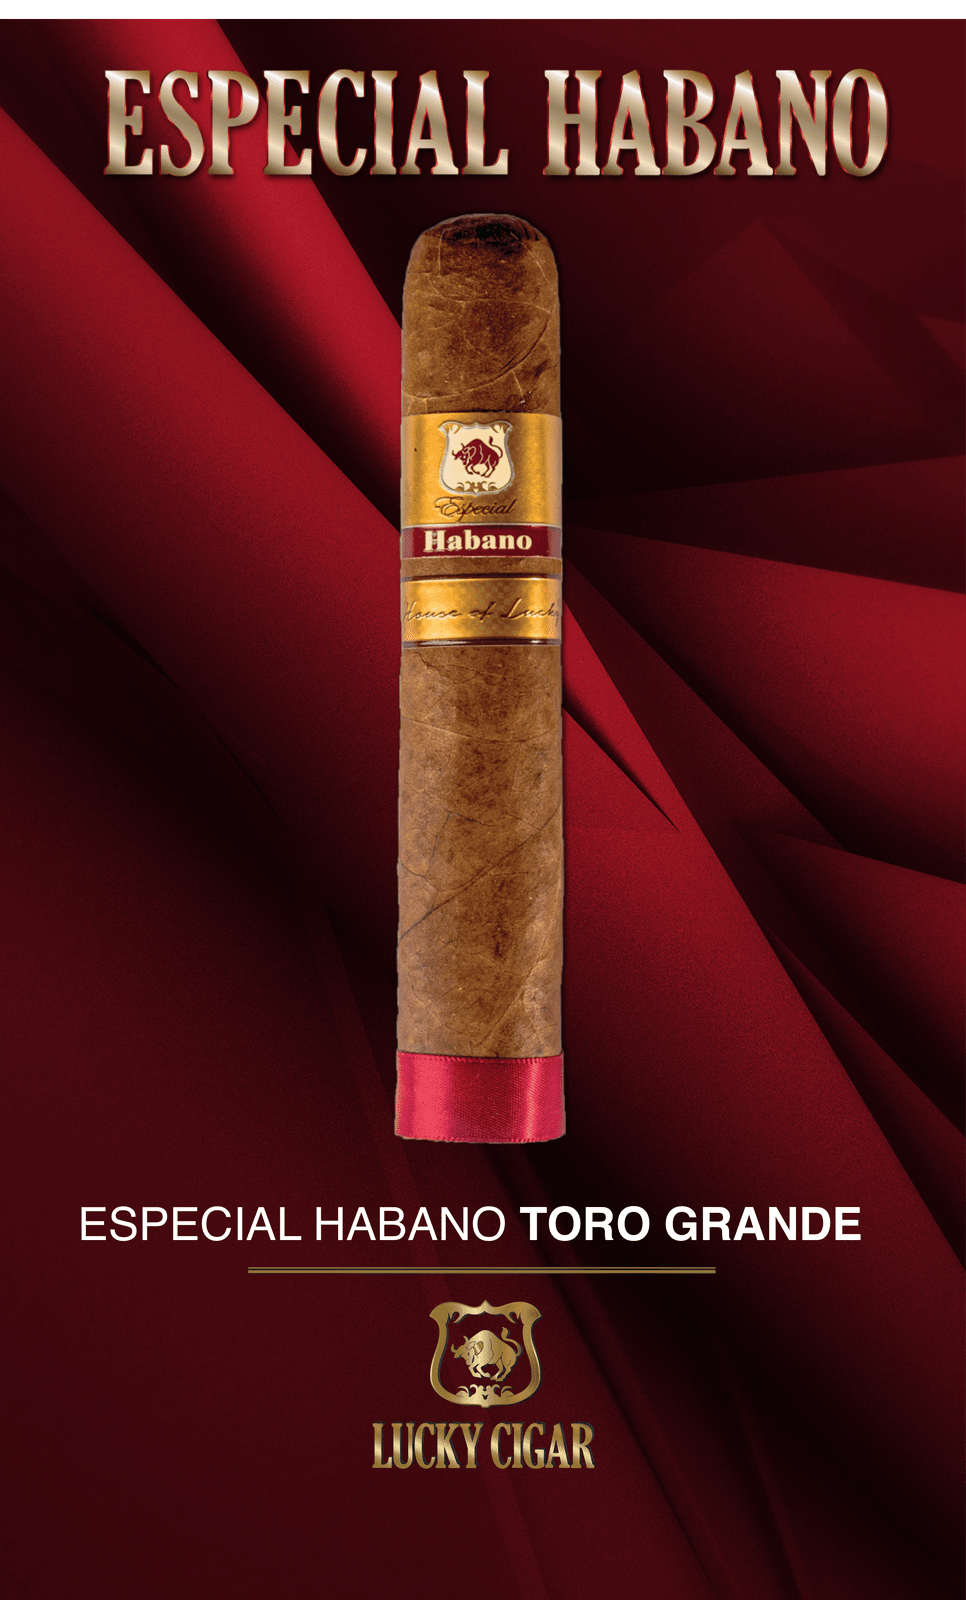 Habano Cigars: Especial Habano by Lucky Cigar: